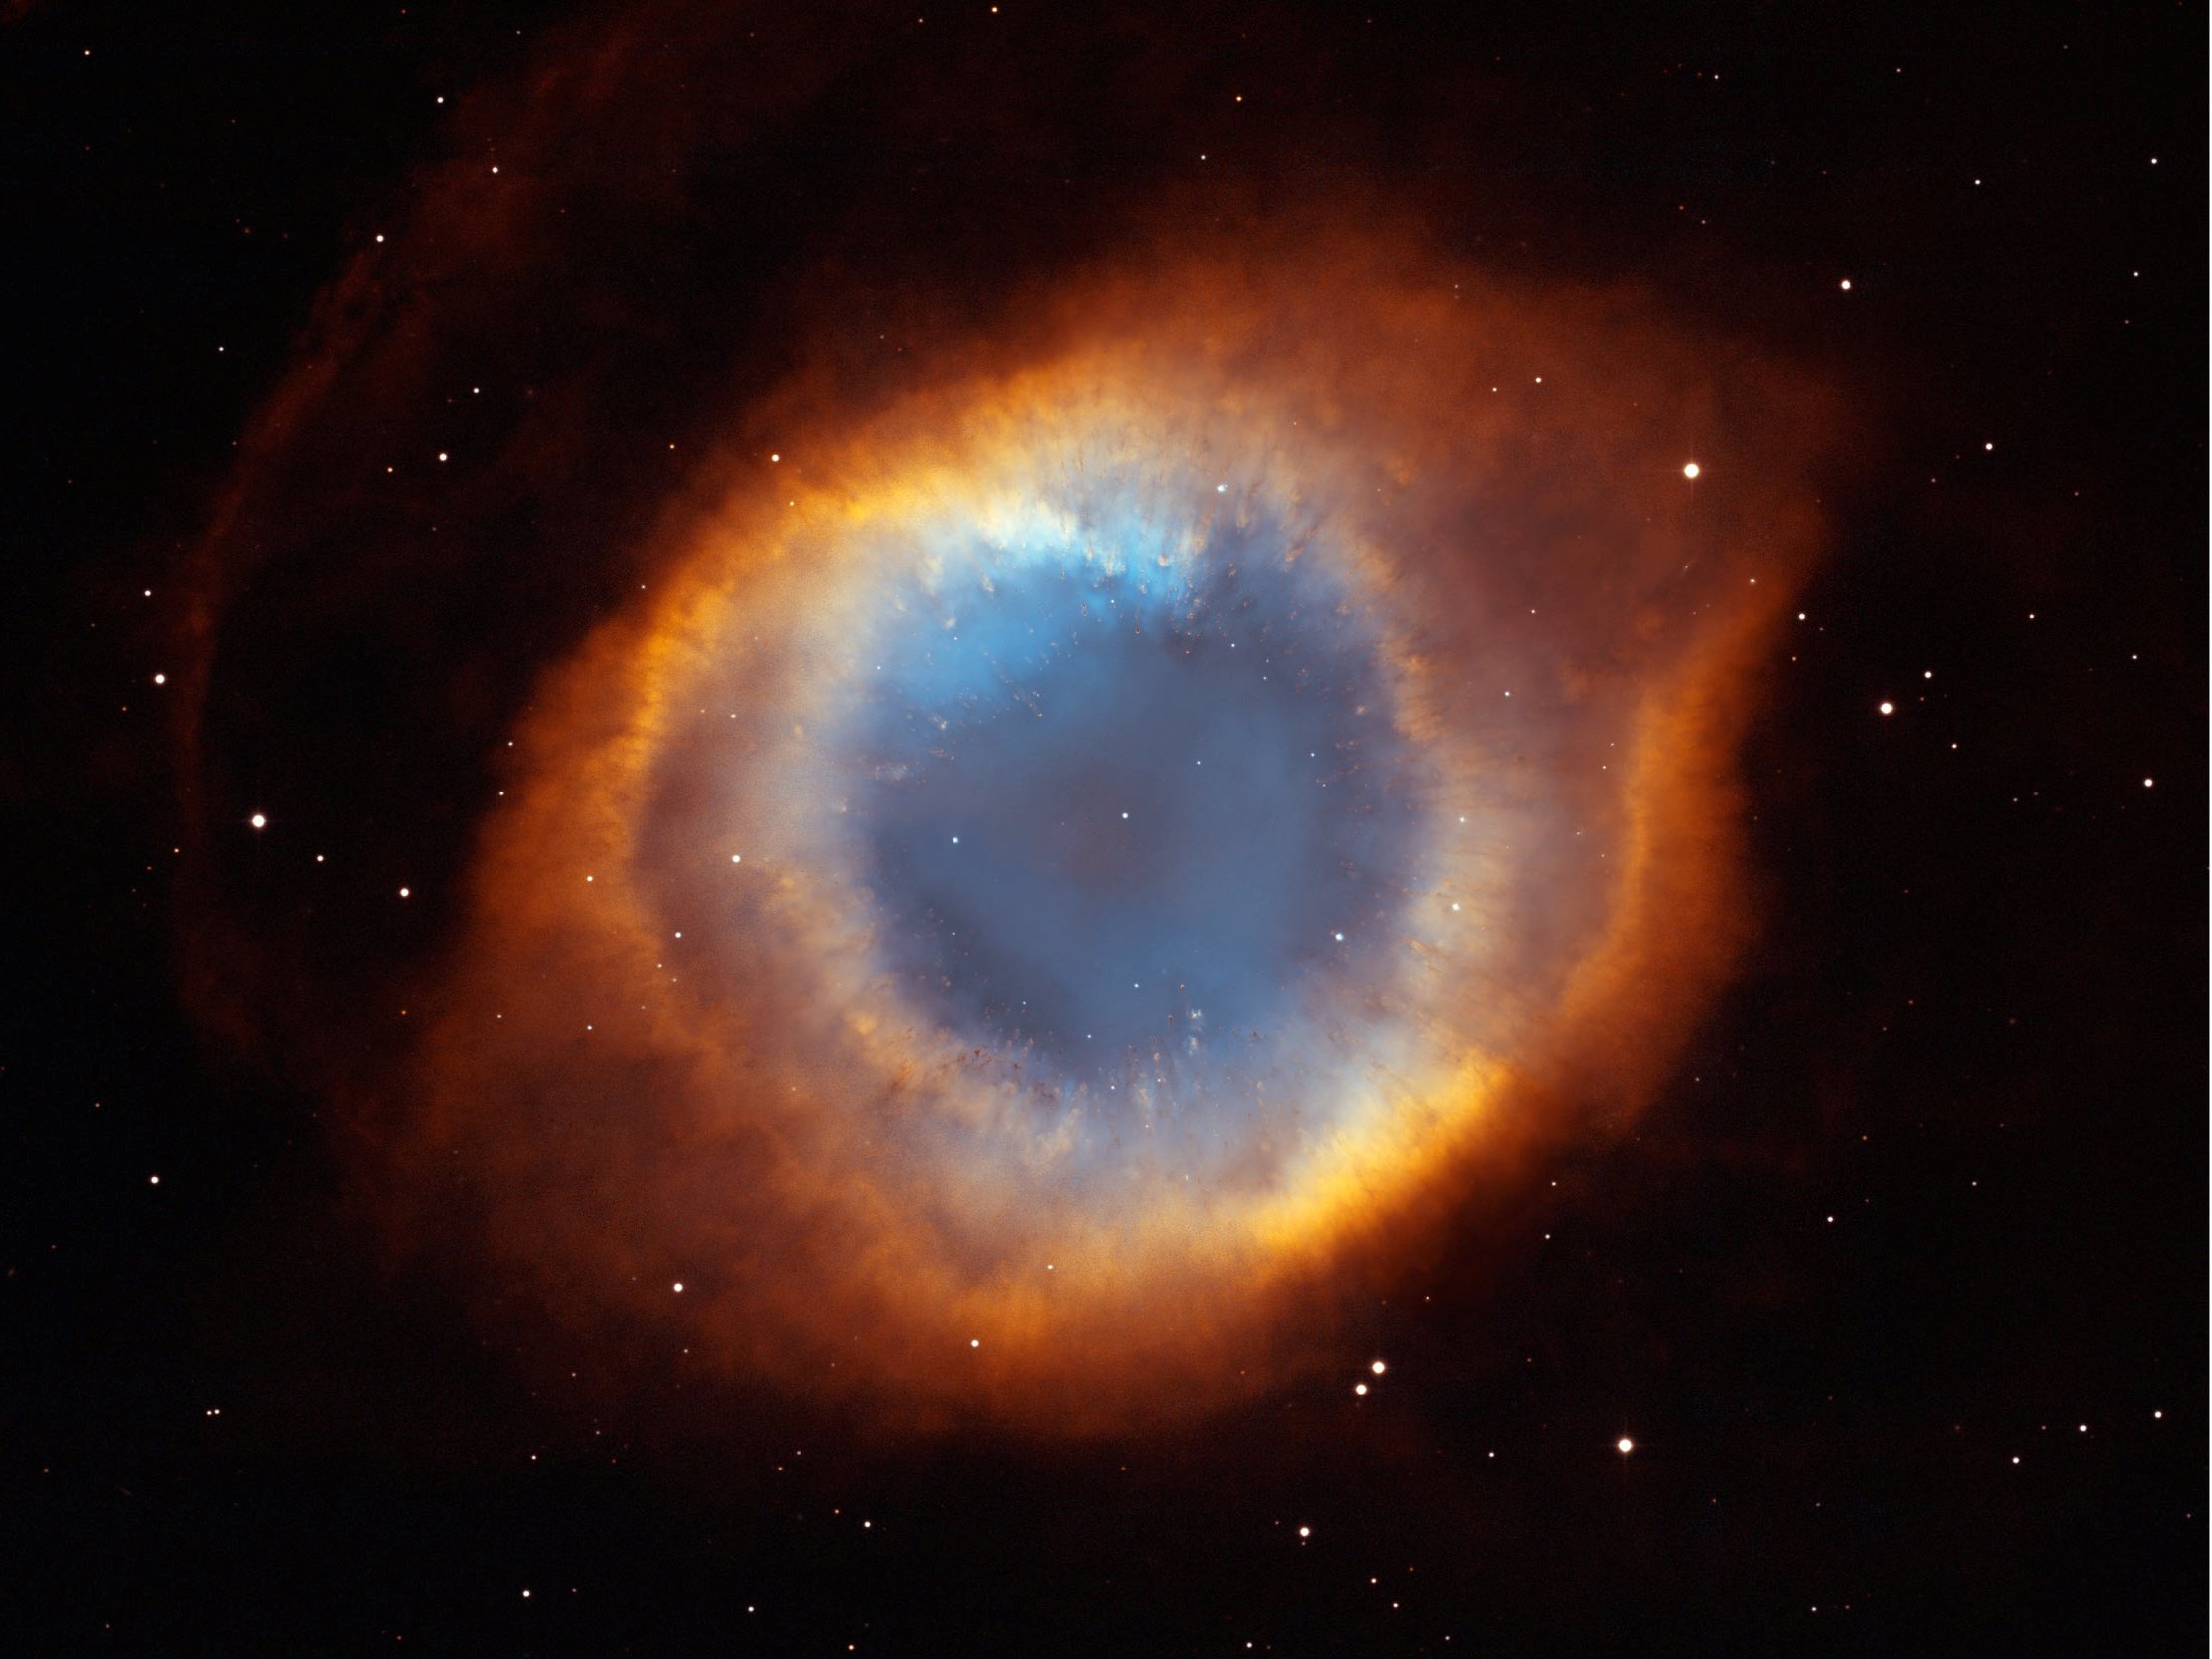 ngc-7293-or-the-helix-nebula.jpg